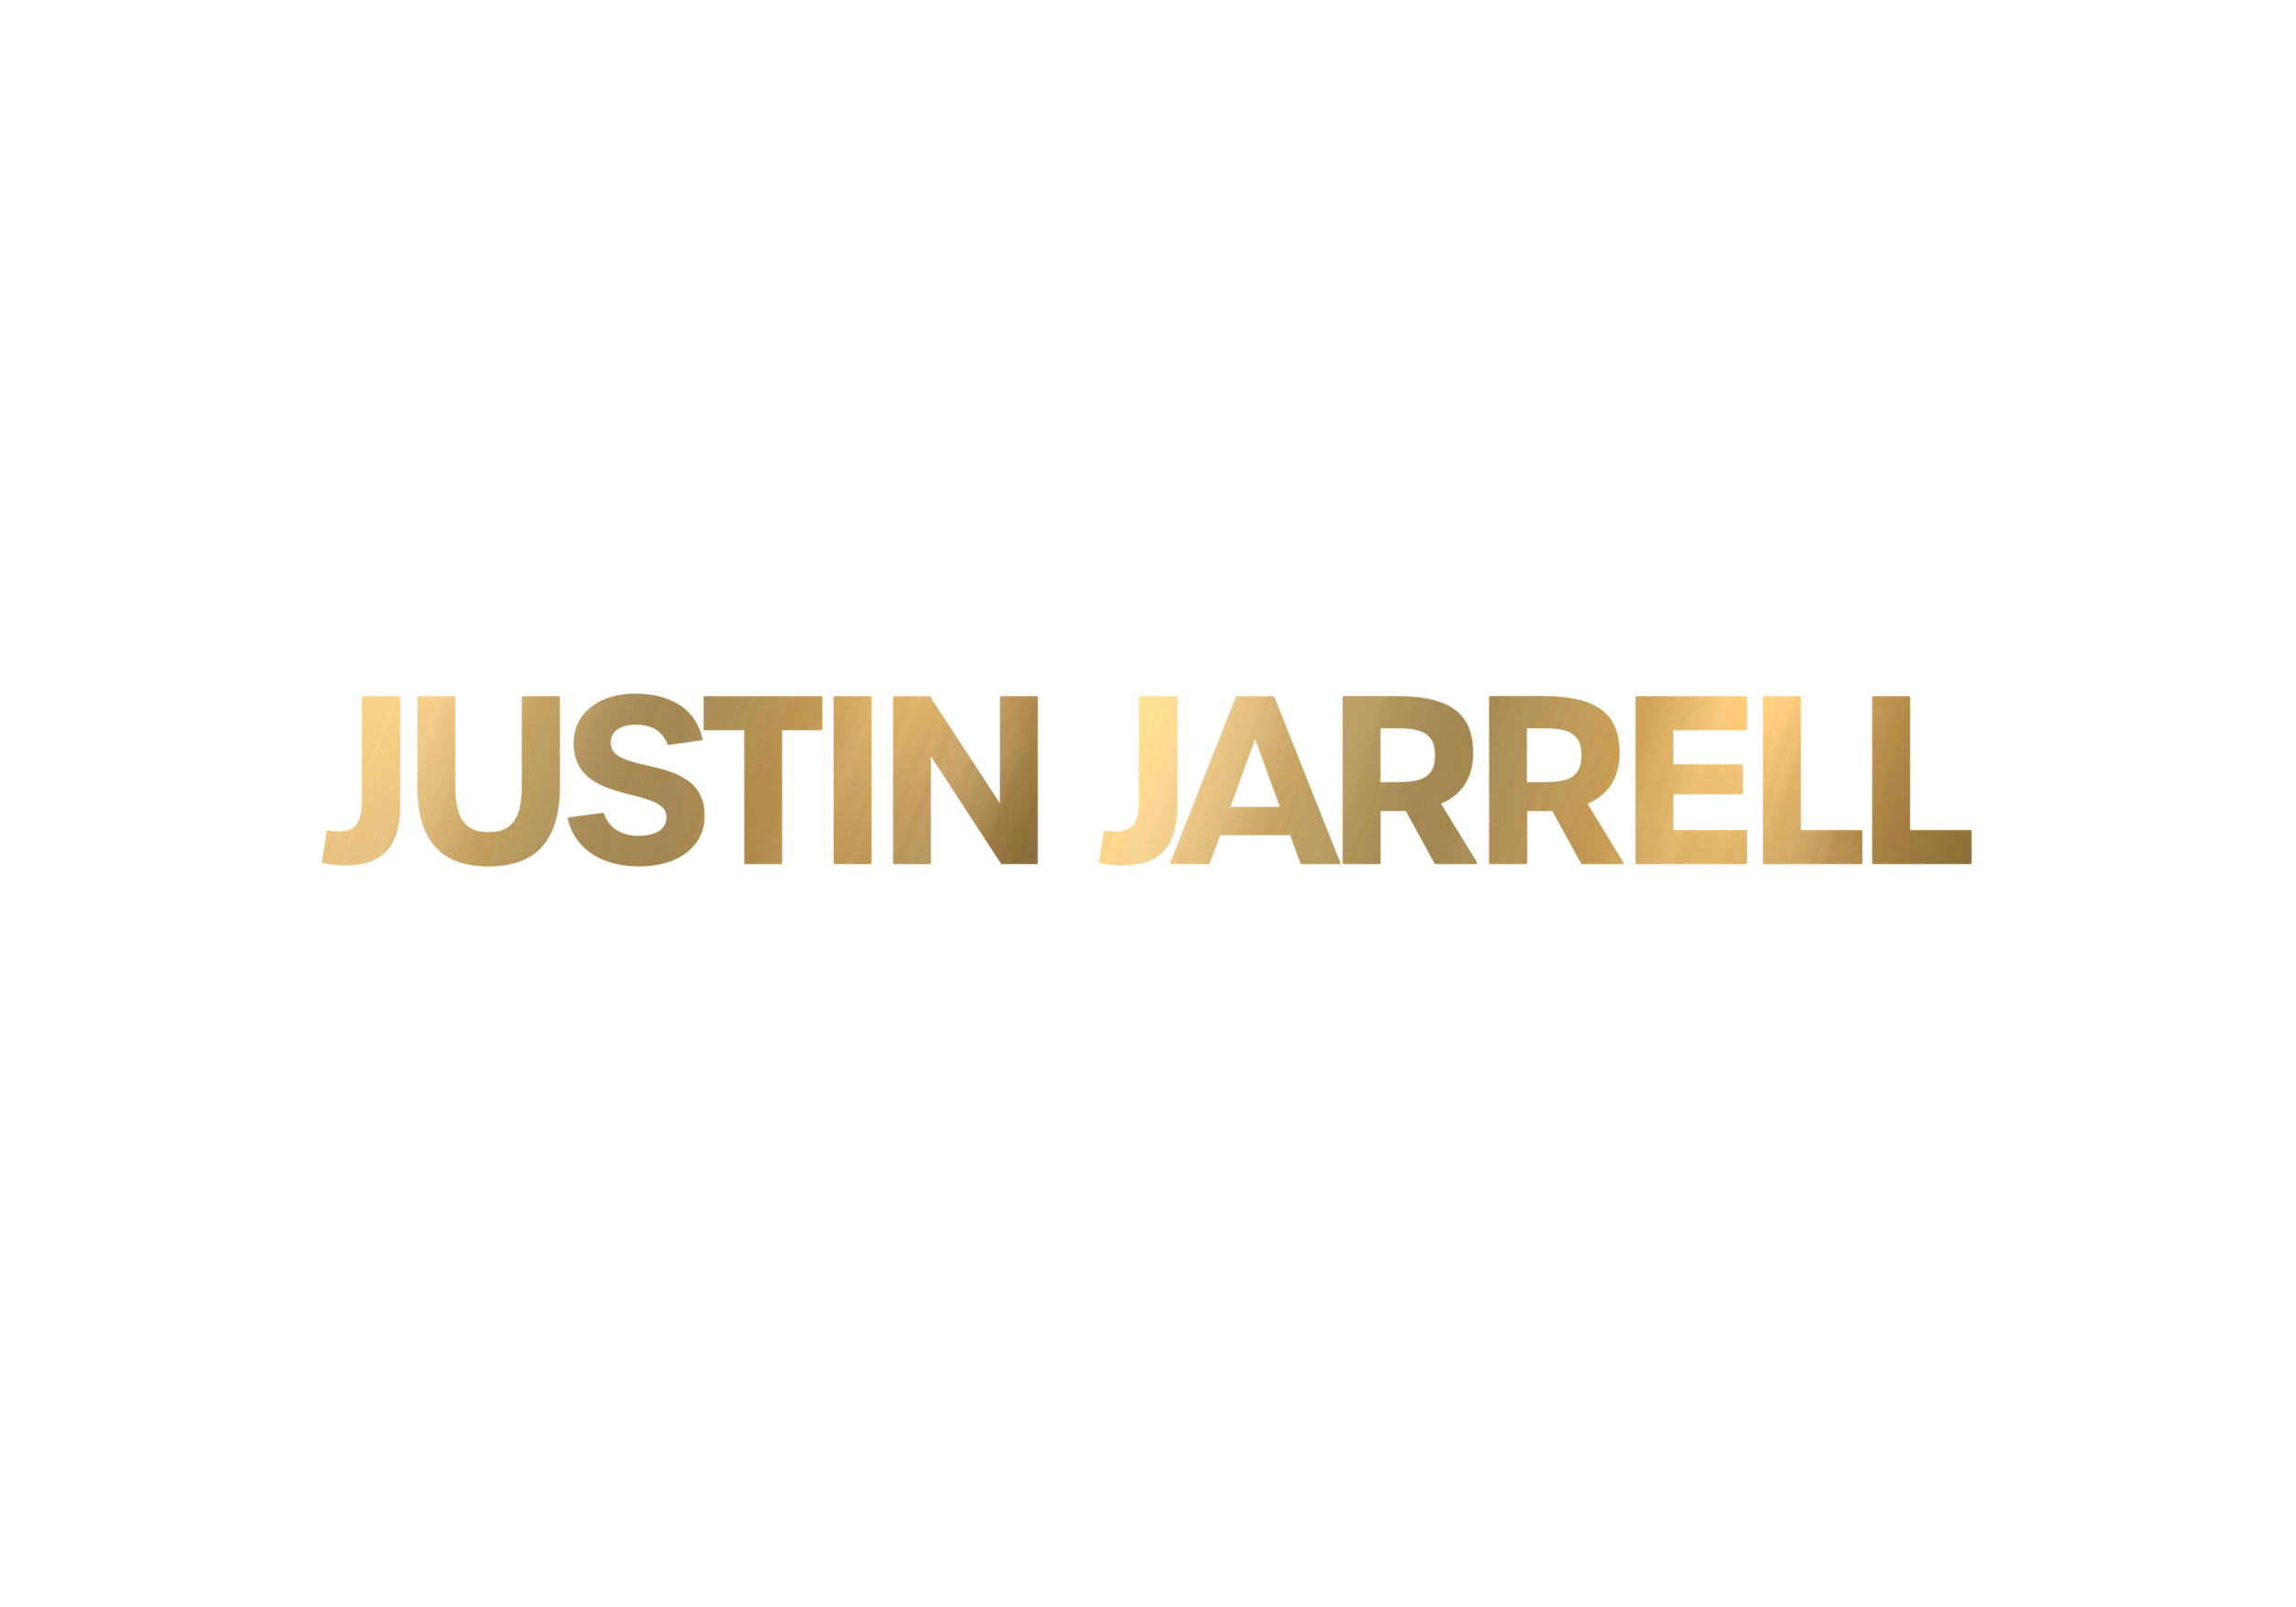 Justin Jarrell